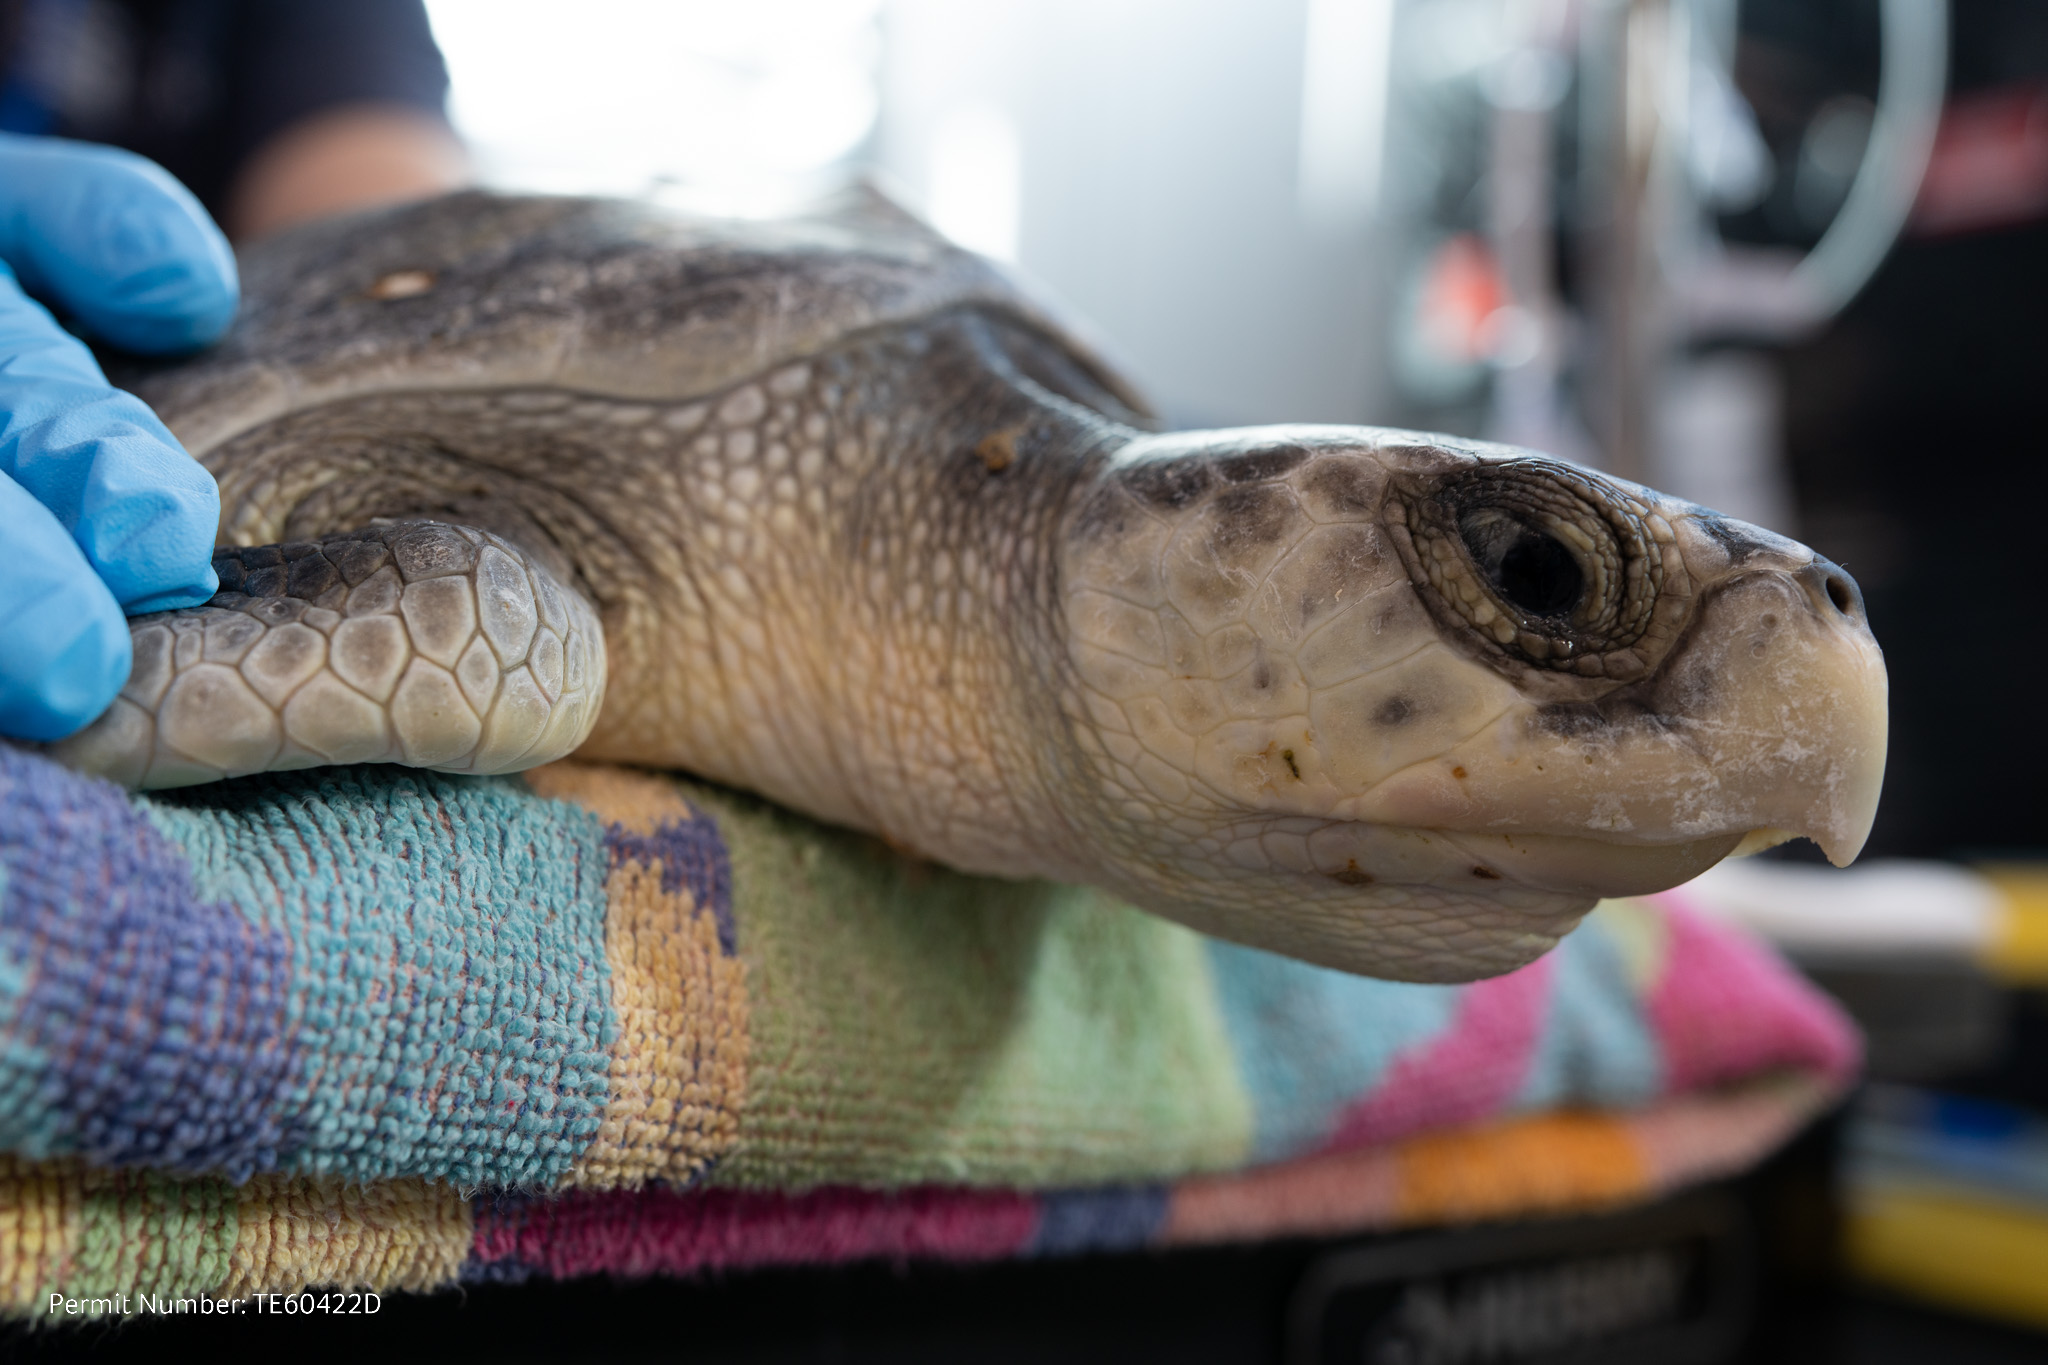 Mystic Aquarium rehabbing sea turtles found cold-shocked on Cape Cod